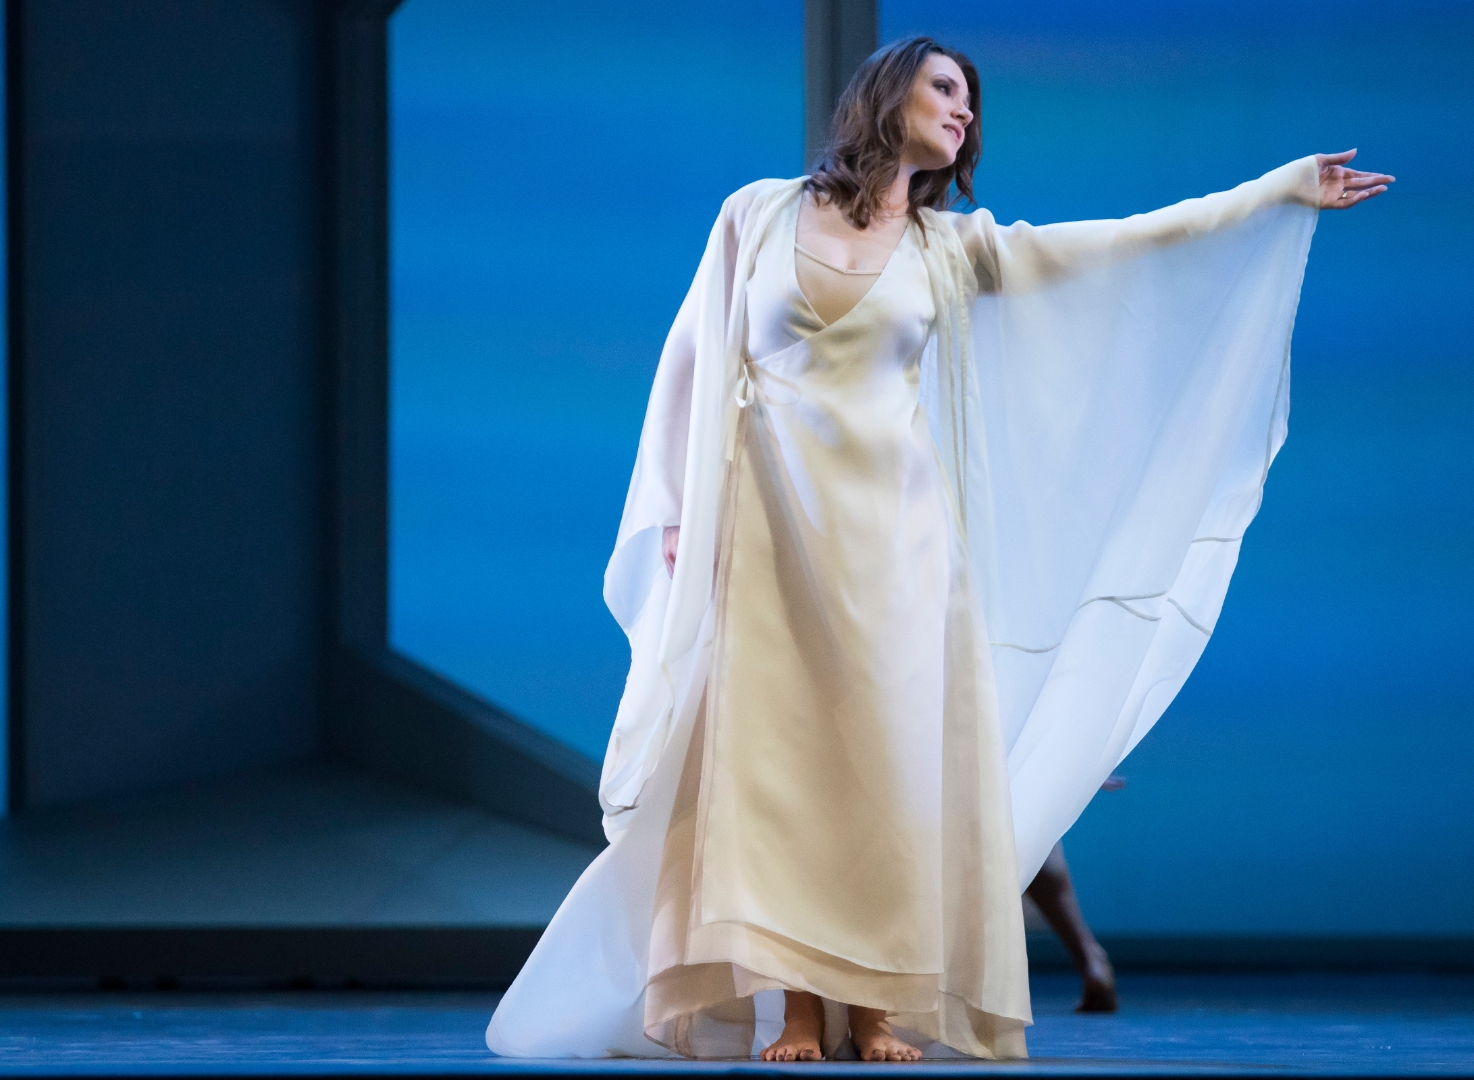 Lyric Opera of Chicago: Орфей и Эвридика